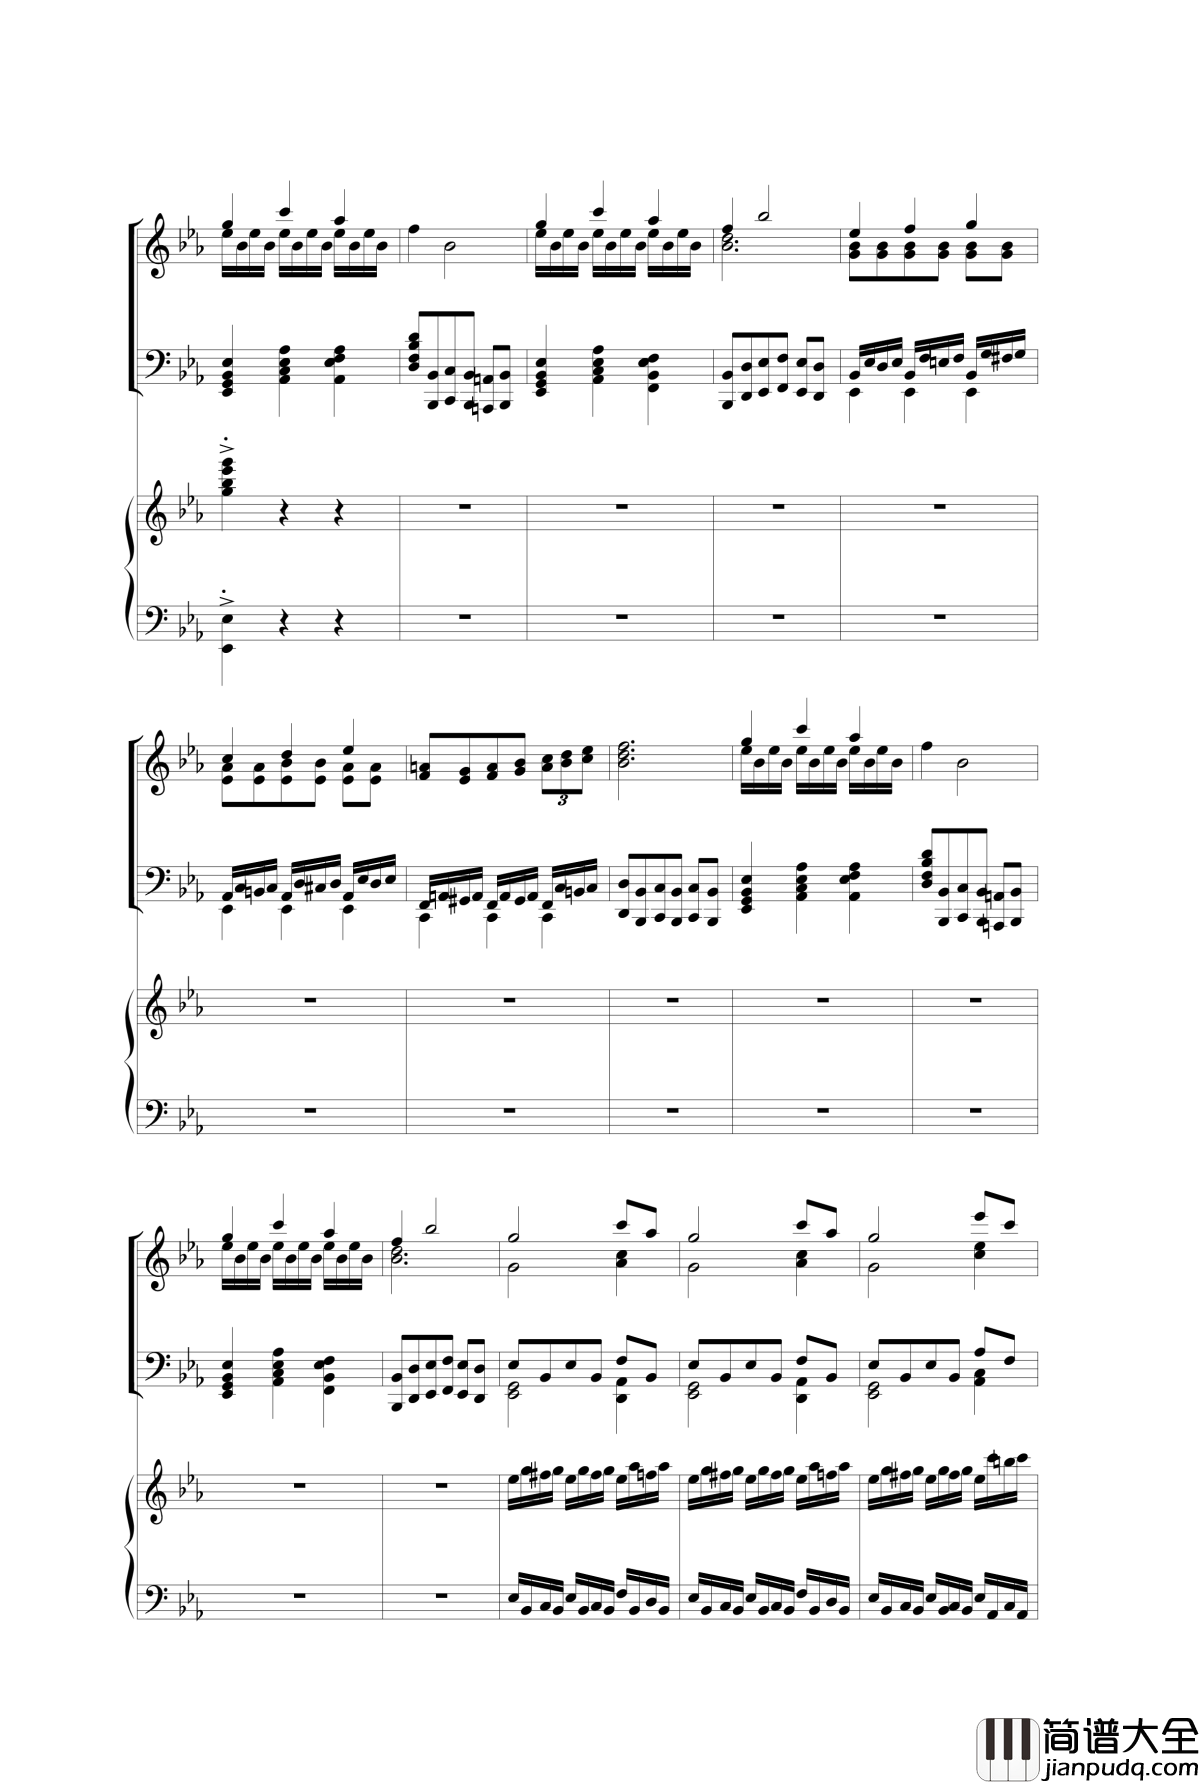 Piano_Concerto_I钢琴谱_3.mov_nzh1934